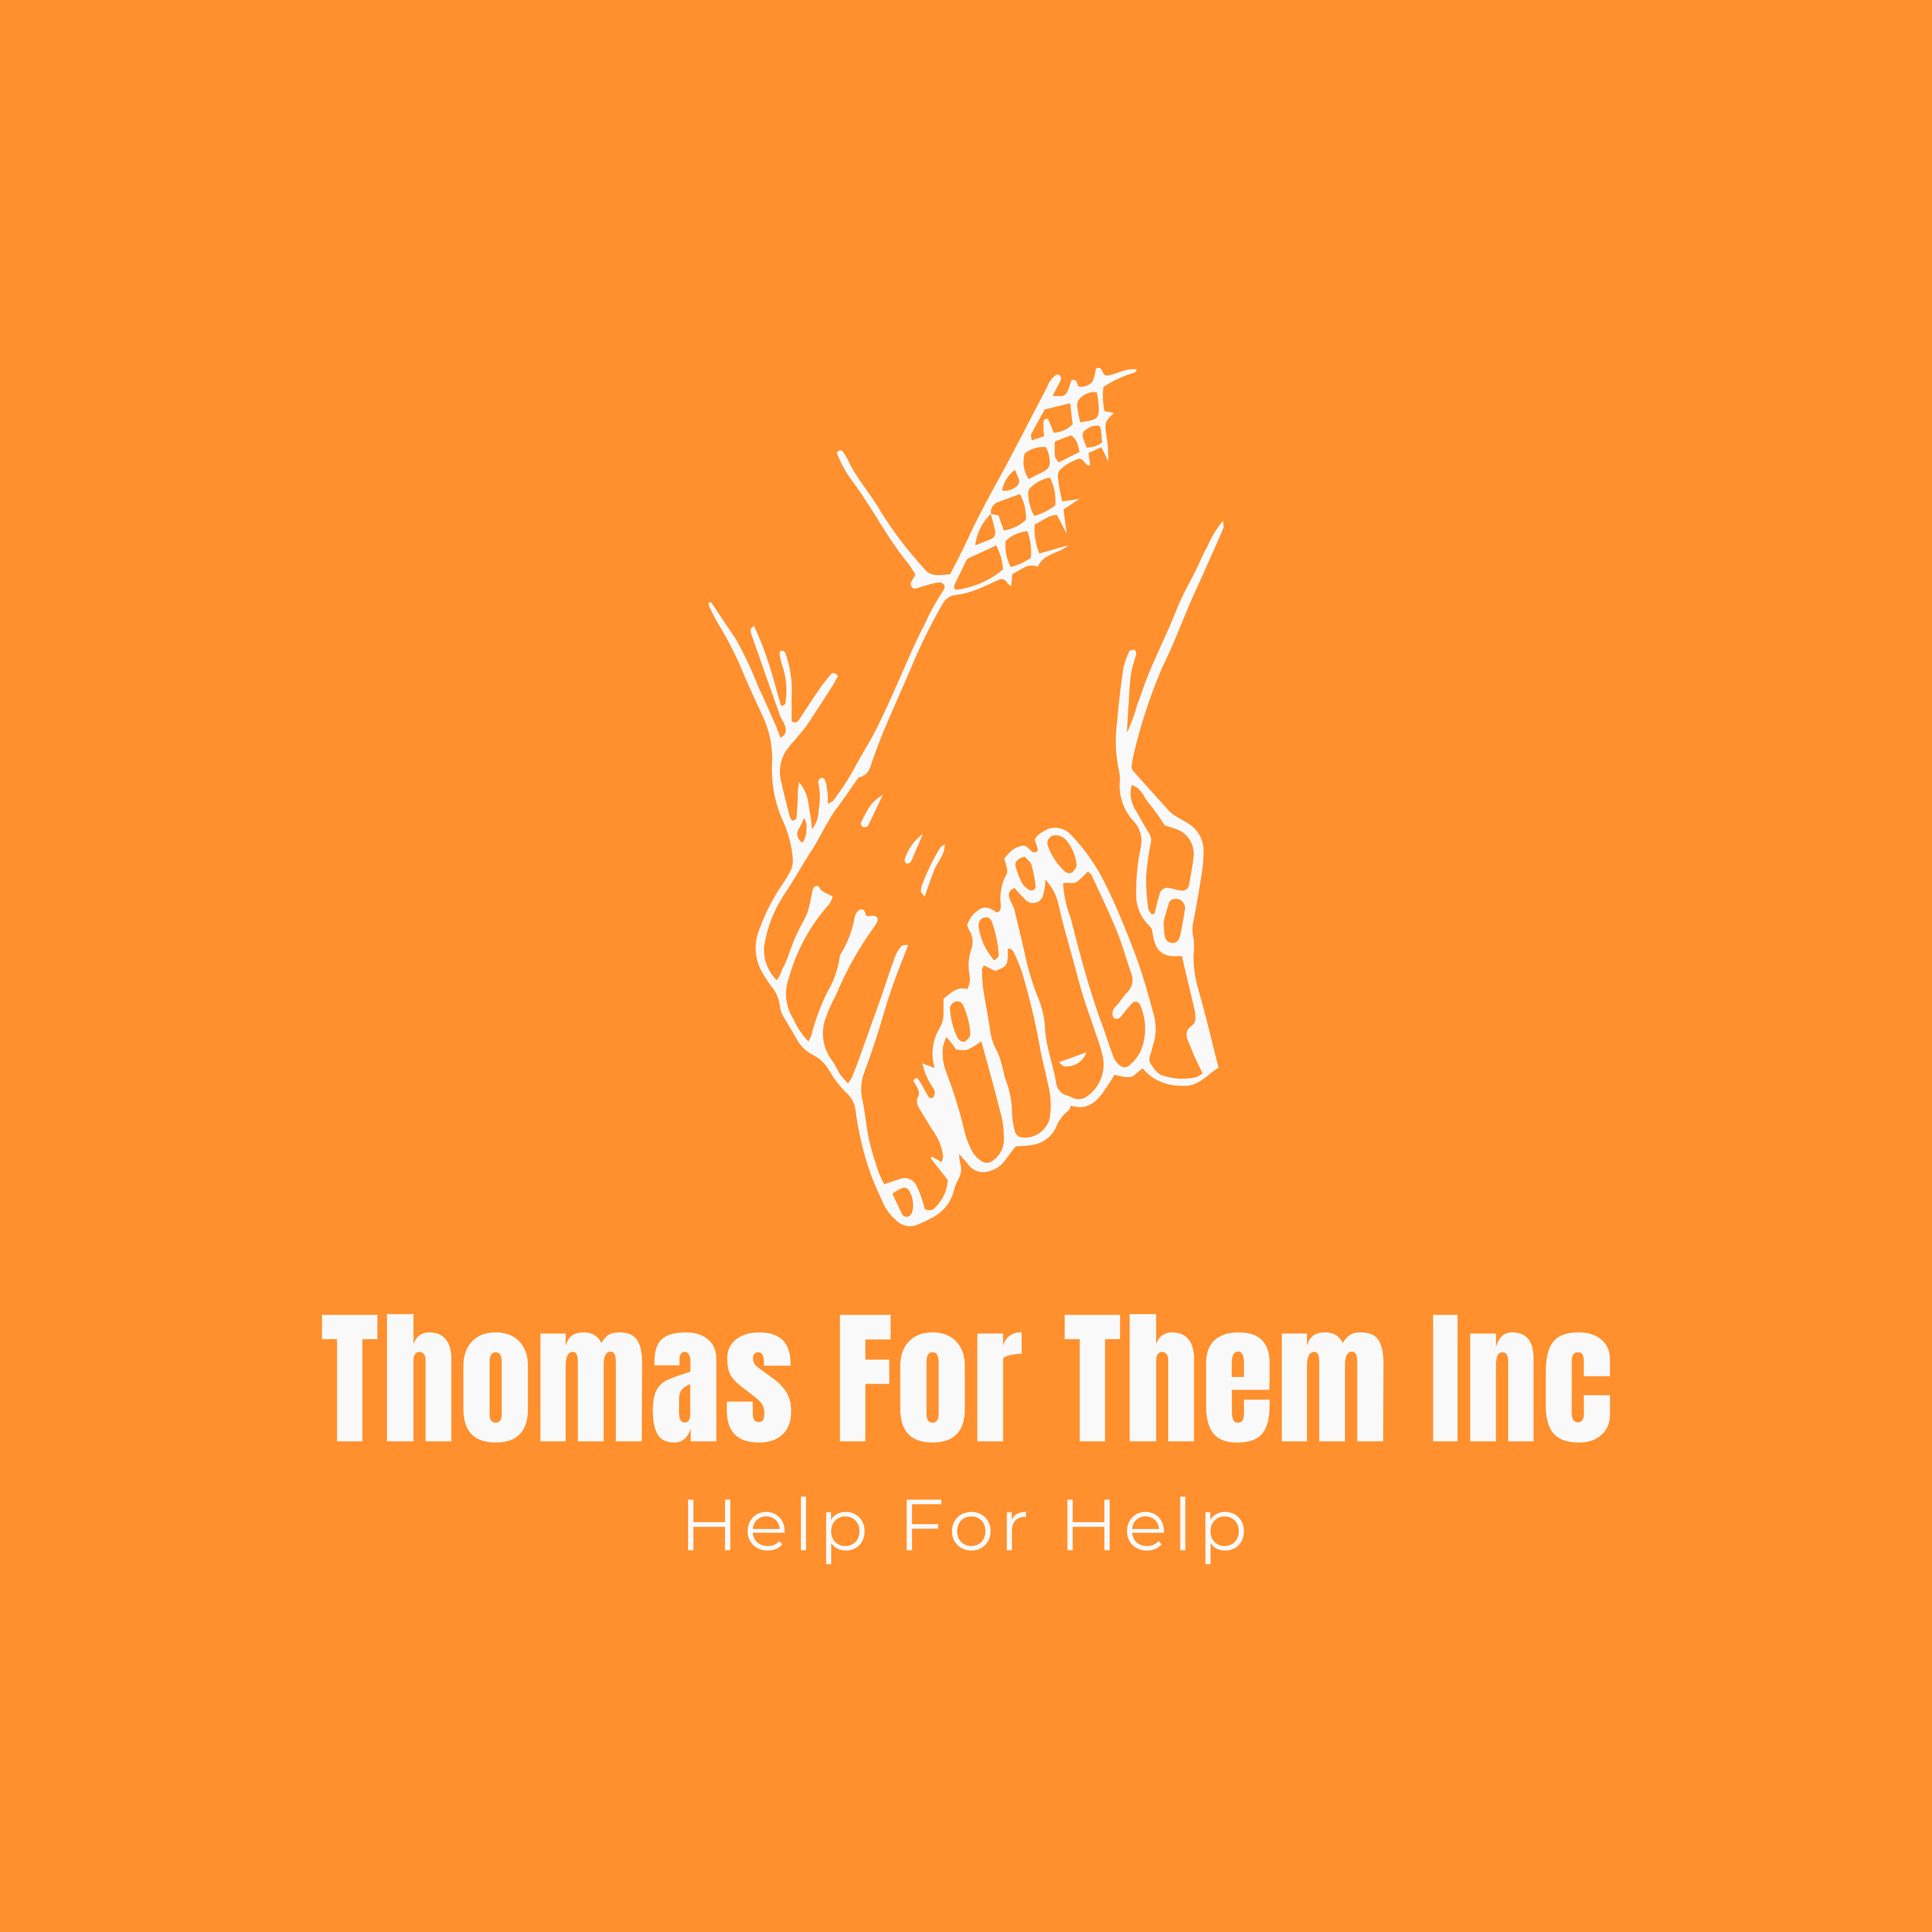 Thomas For Them Inc